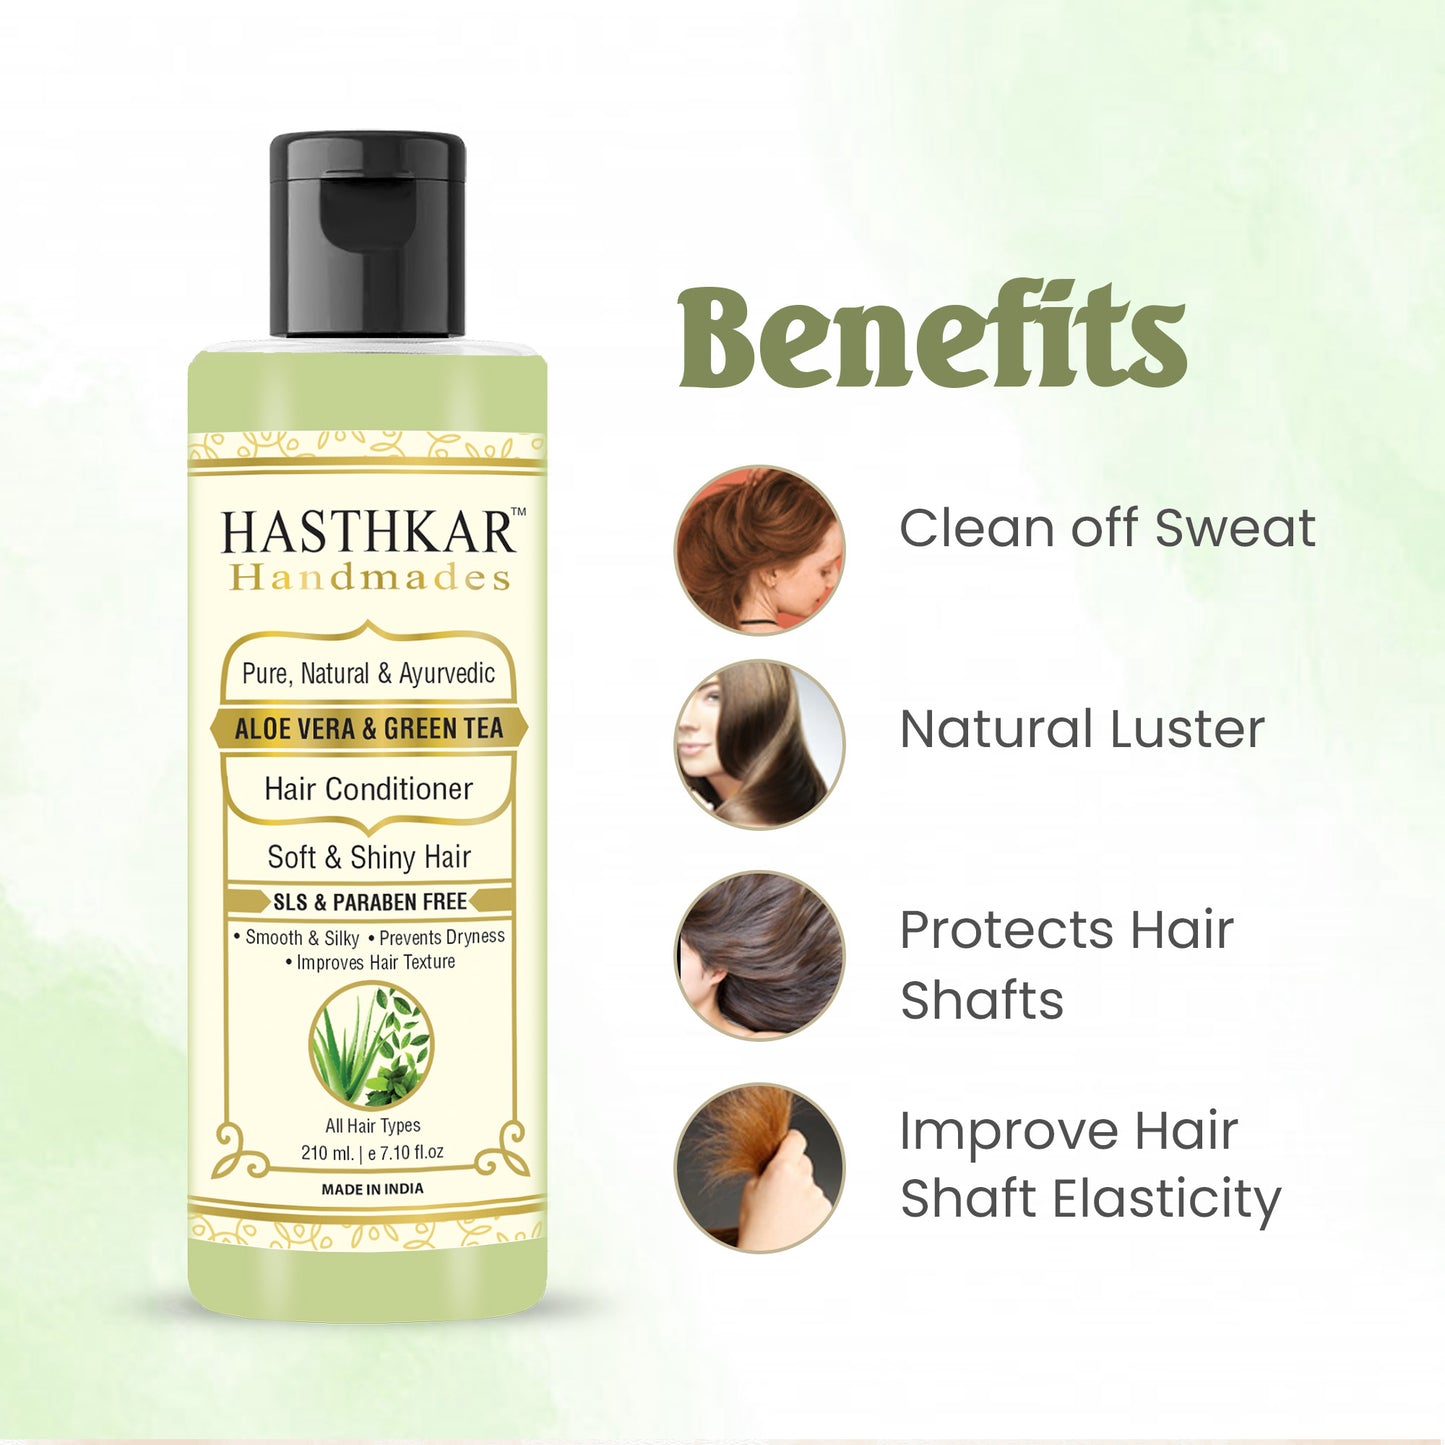 Hasthkar Hamdmades Aloe Vera & Green Tea Hair Conditioner for Men & Women 210ml